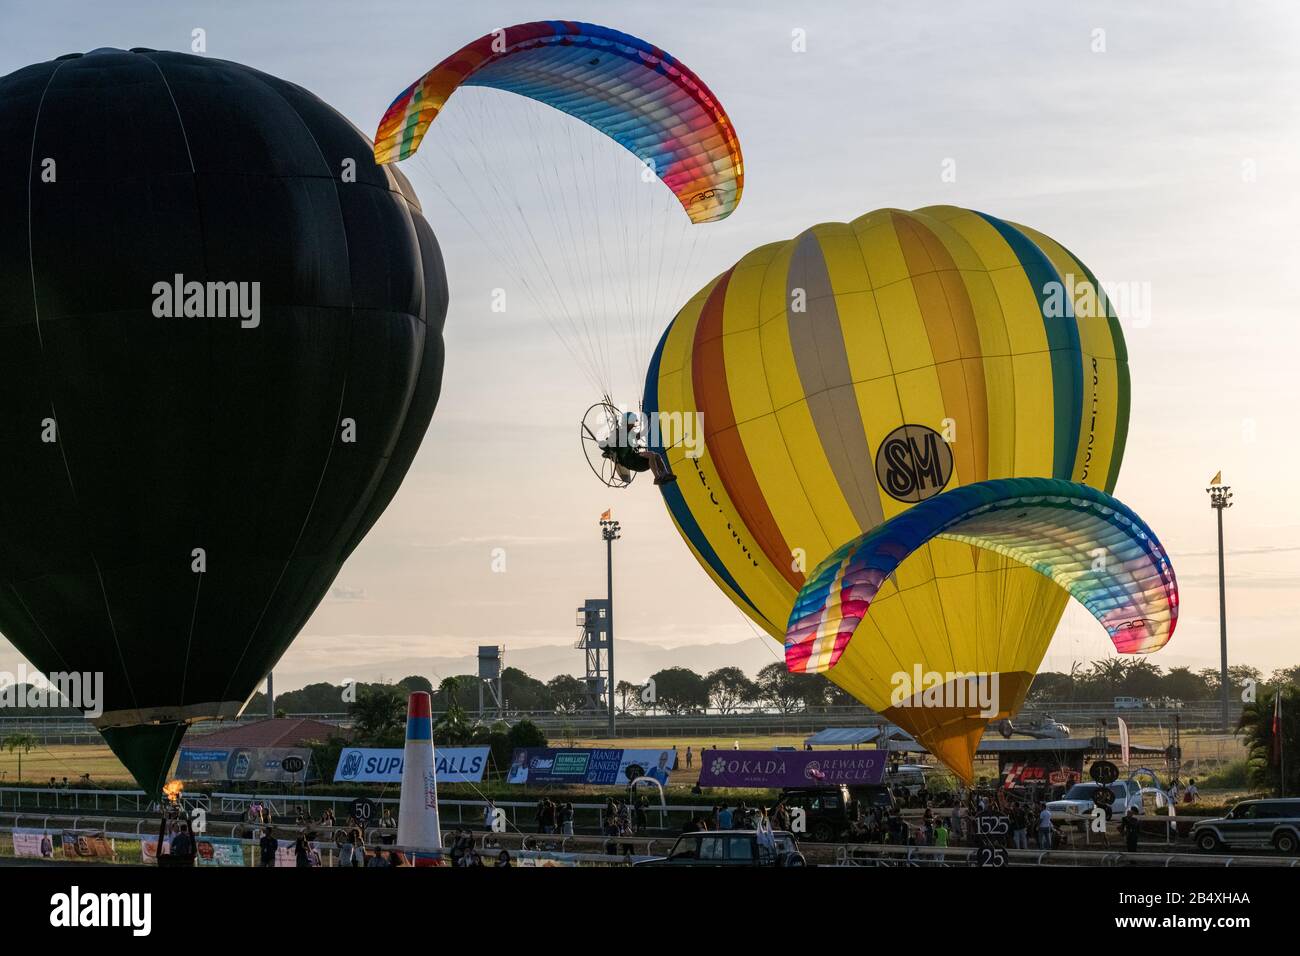 Hot Air Balloon festival air carnival 2020 Stock Photo